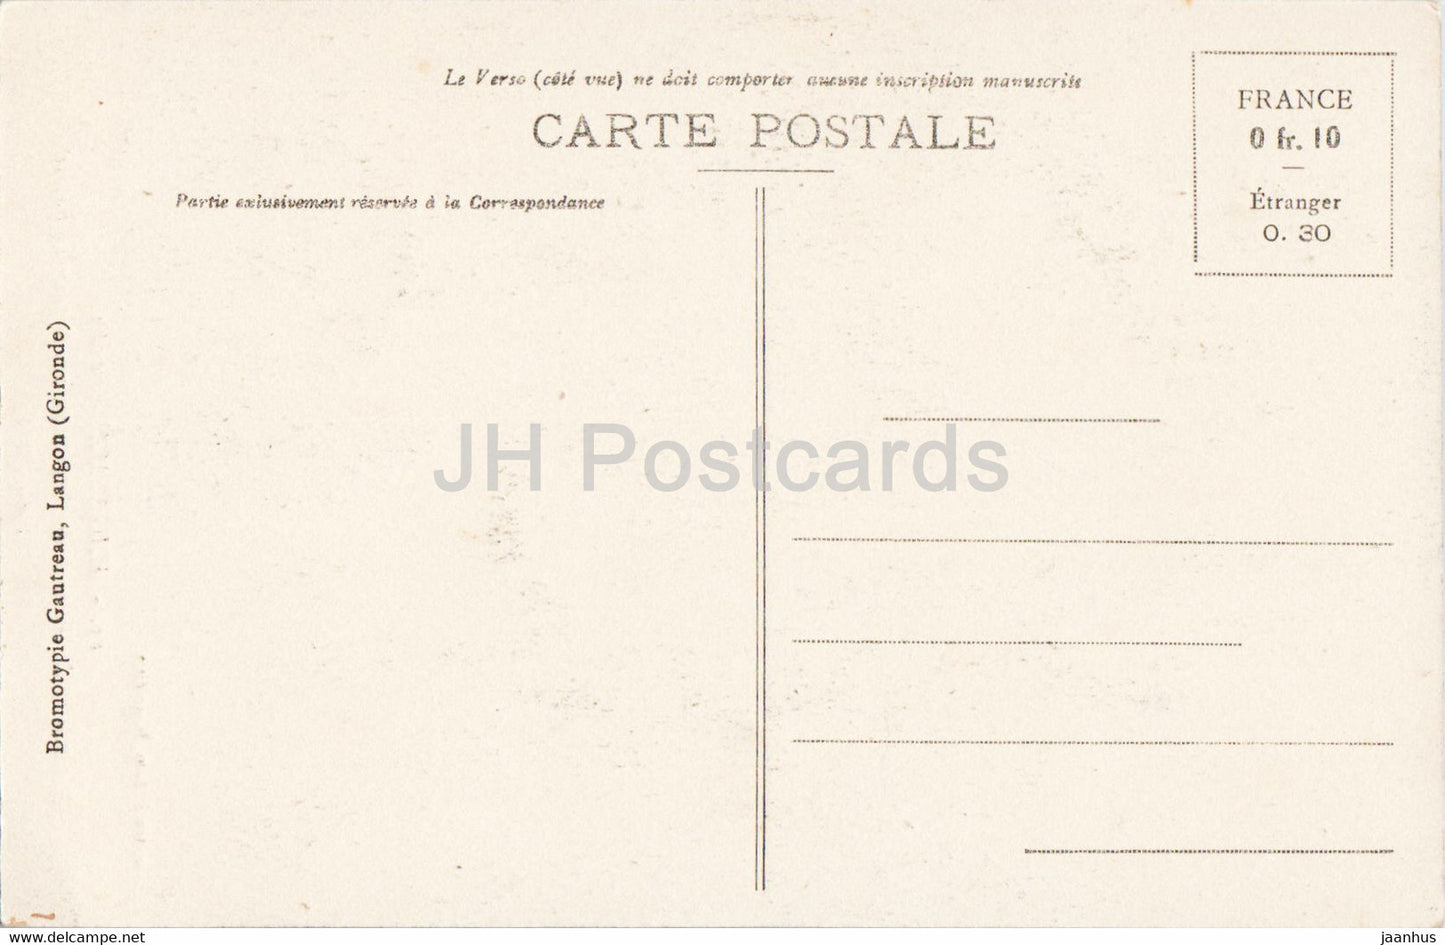 Hagetmau - Monument des Enfants de Hagetmau morts pour la Patrie 1914-1918 - 15 - old postcard - France - unused